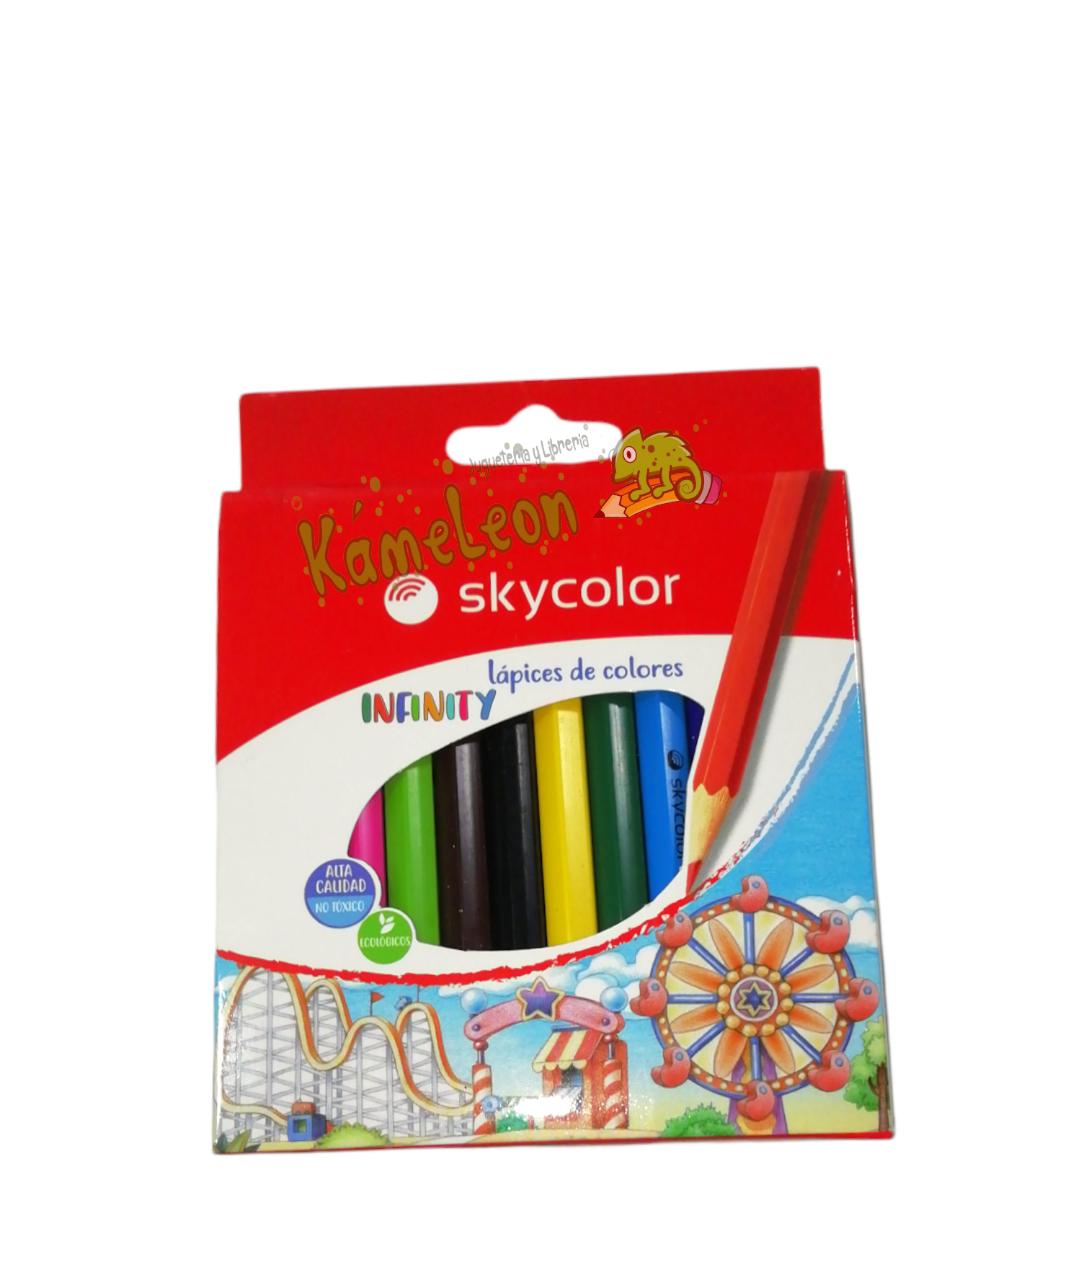 Lapices de colores infinity mini de doce sky